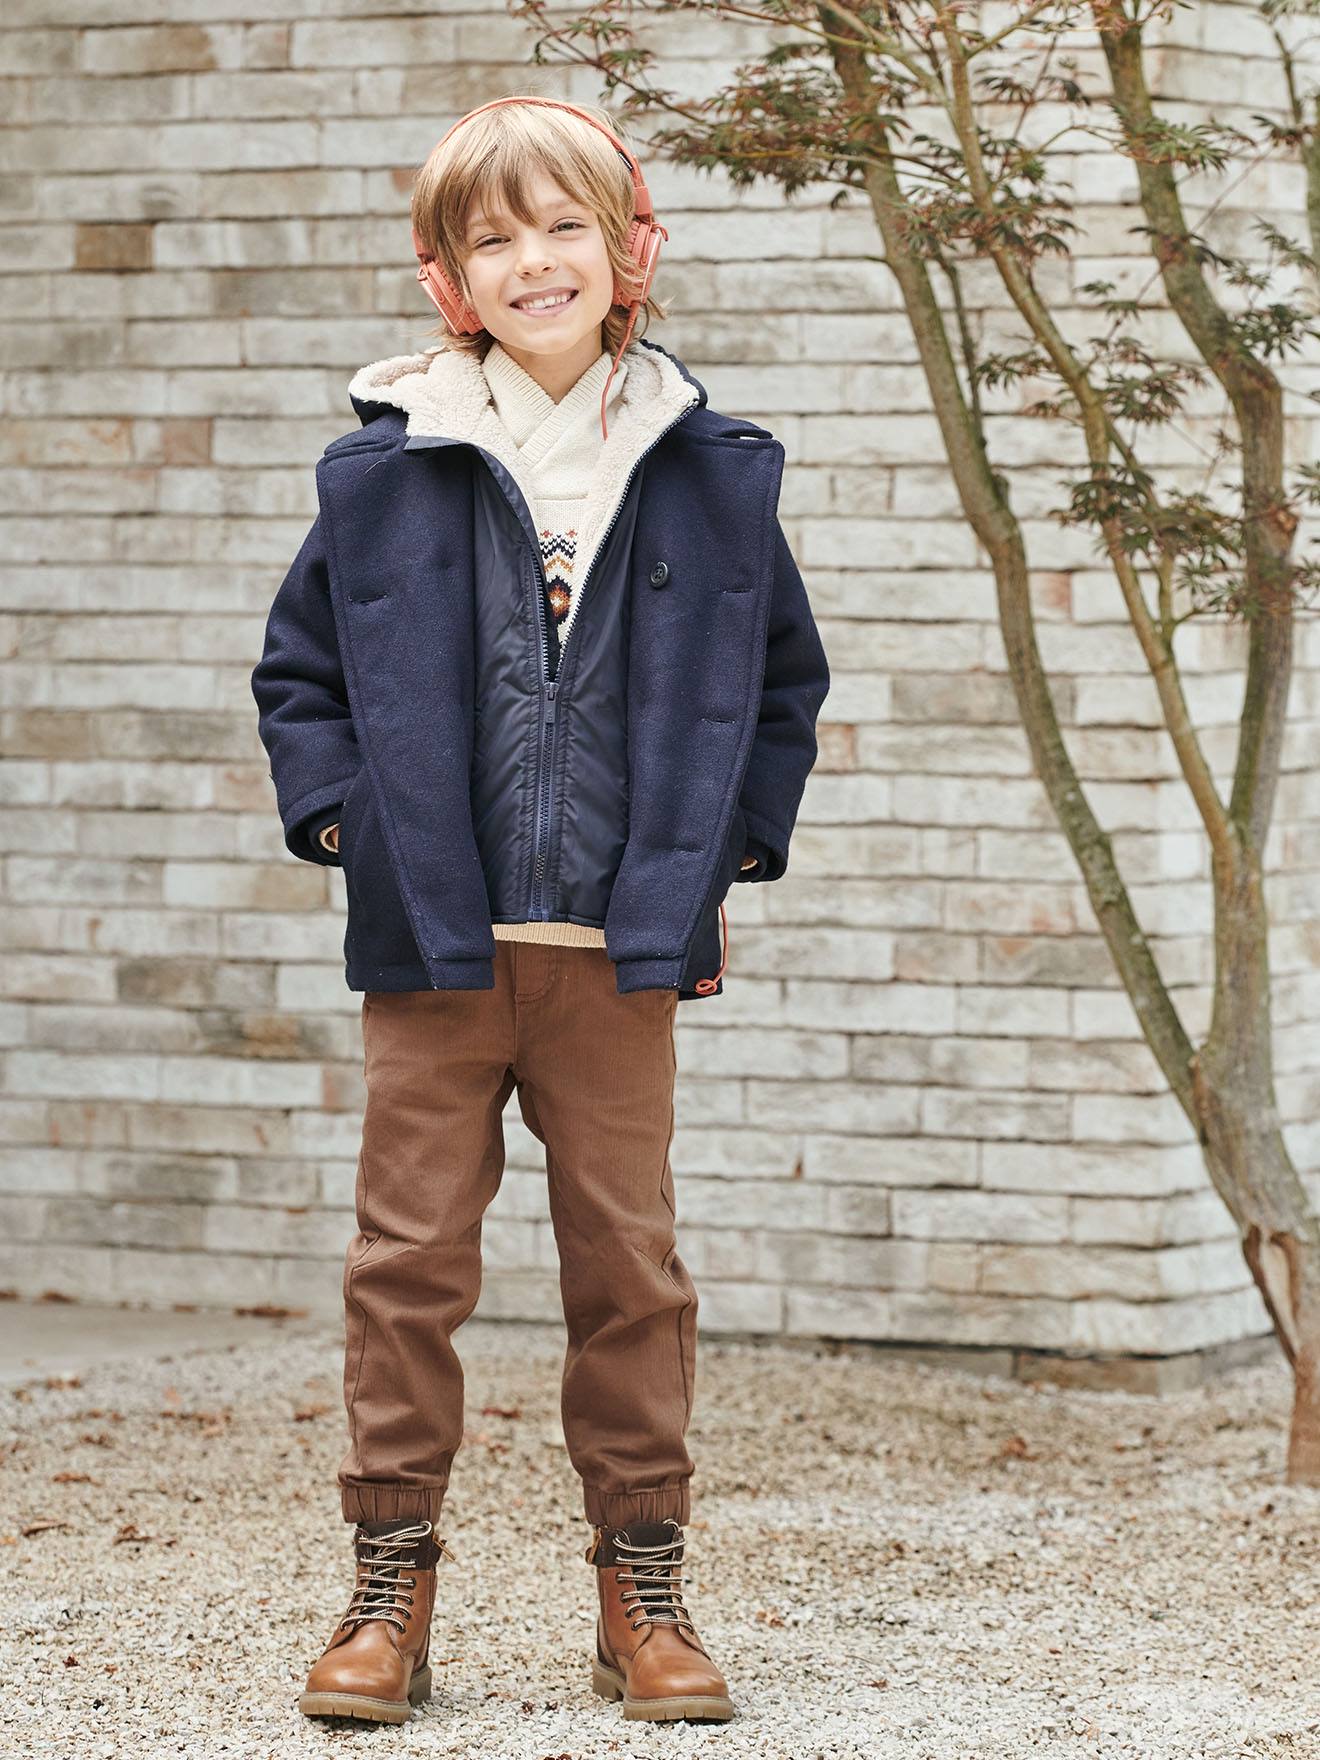 Doudoune garçon 8 ans - Manteaux chauds pour enfants - vertbaudet